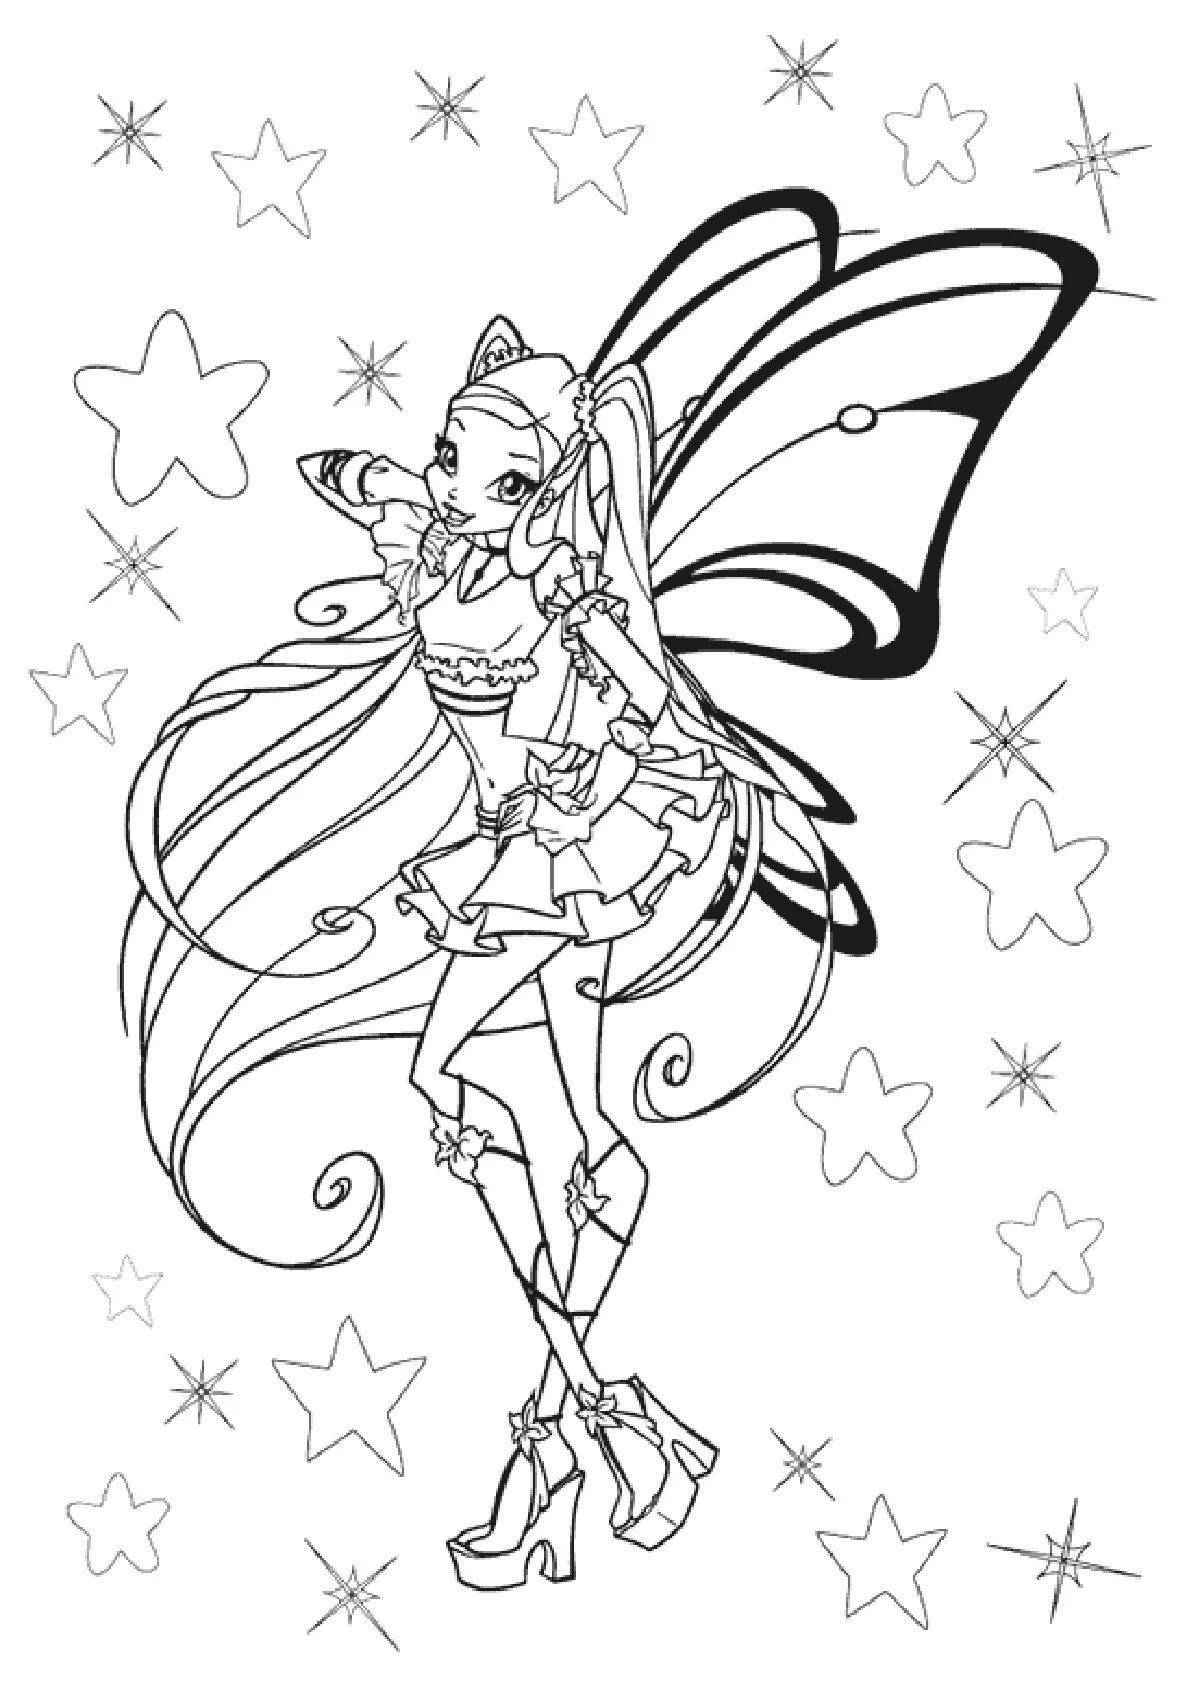 Winx stella glitter coloring book